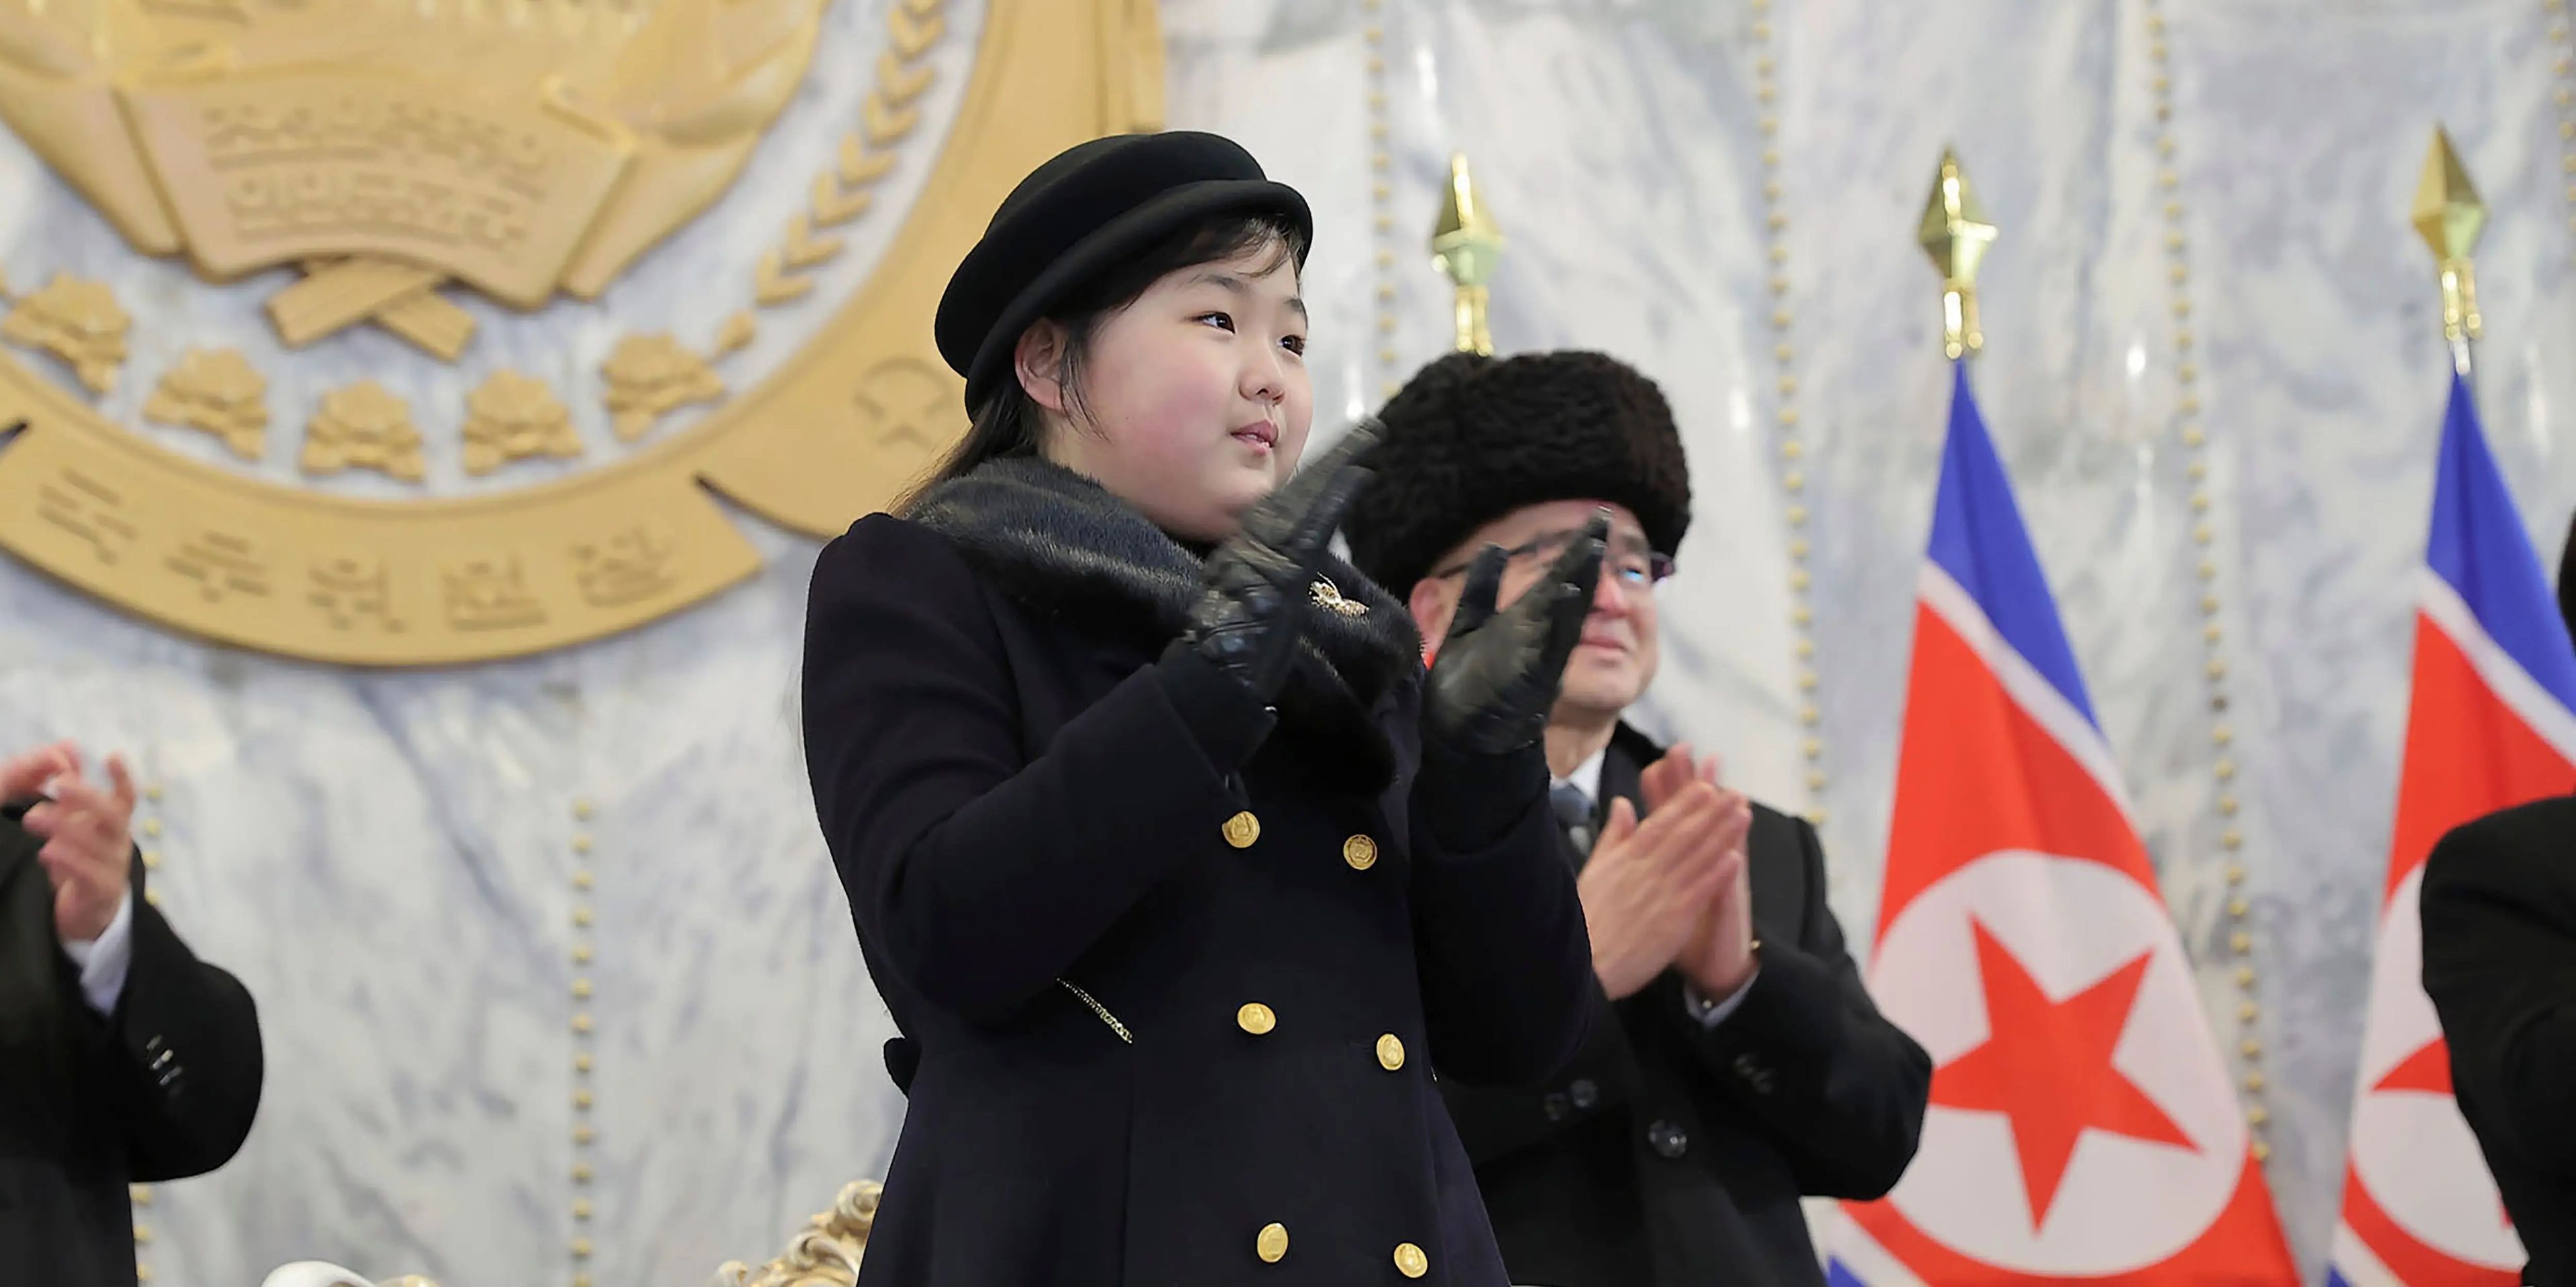 La hija de Kim Jong Un, que se cree que se llama Kim Ju Ae, ha aparecido en múltiples ocasiones en los medios de comunicación estatales norcoreanos en los últimos meses.